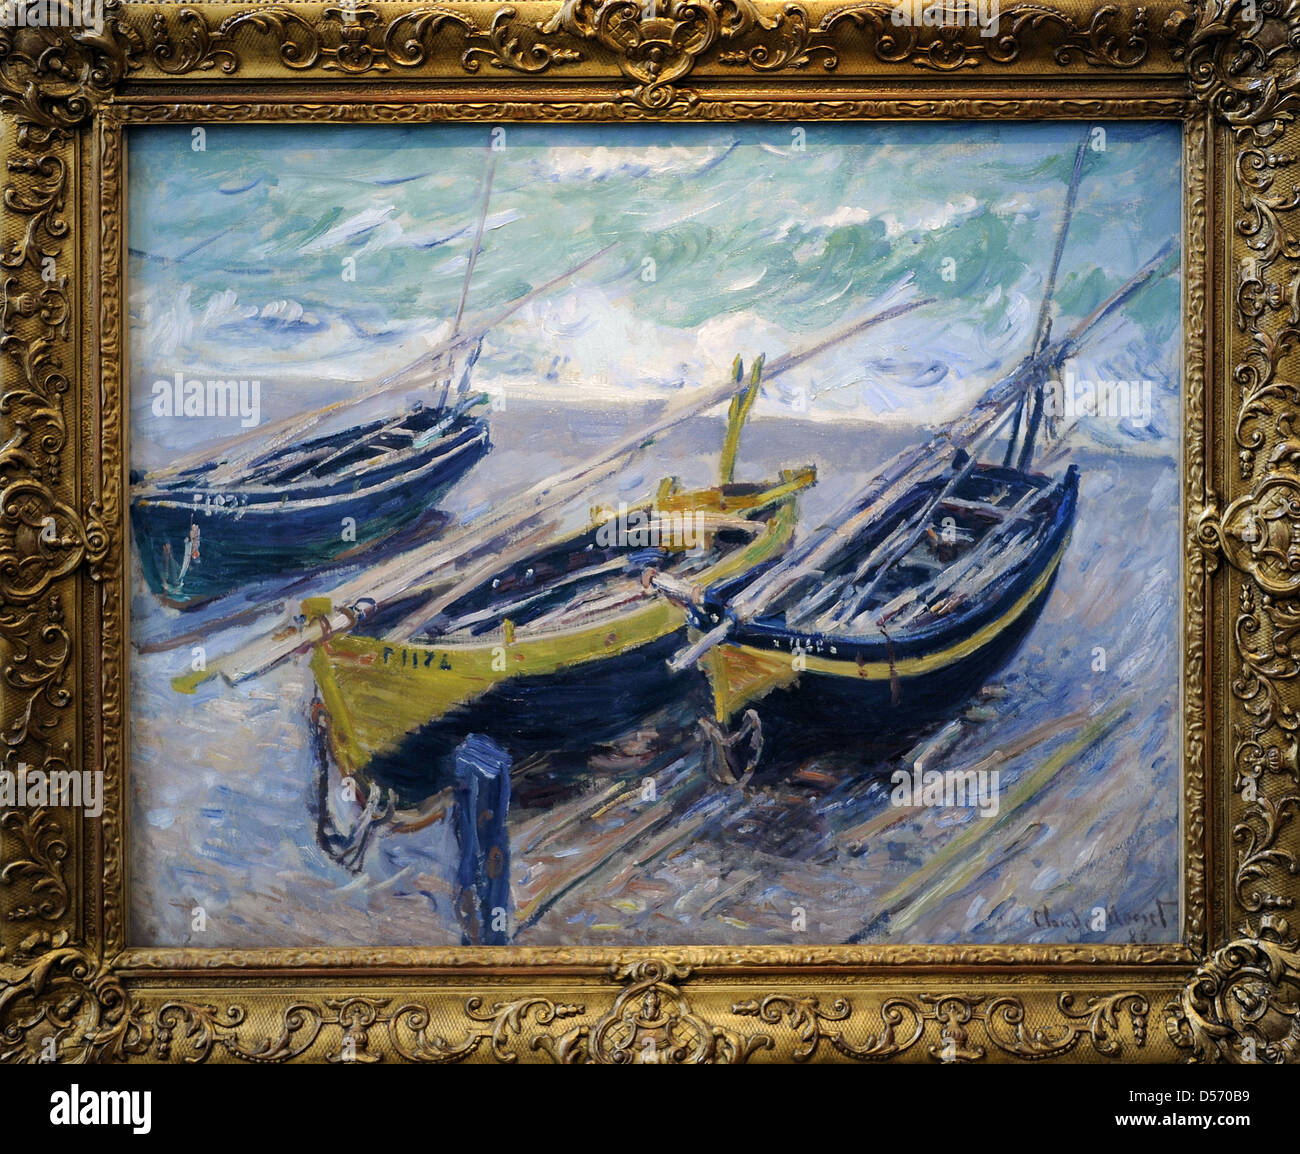 Claude Monet (1840-1926). Französischer Maler. Drei Fischerboote, 1886. Öl auf Leinwand. Museum der bildenden Künste. Budapest. Ungarn. Stockfoto